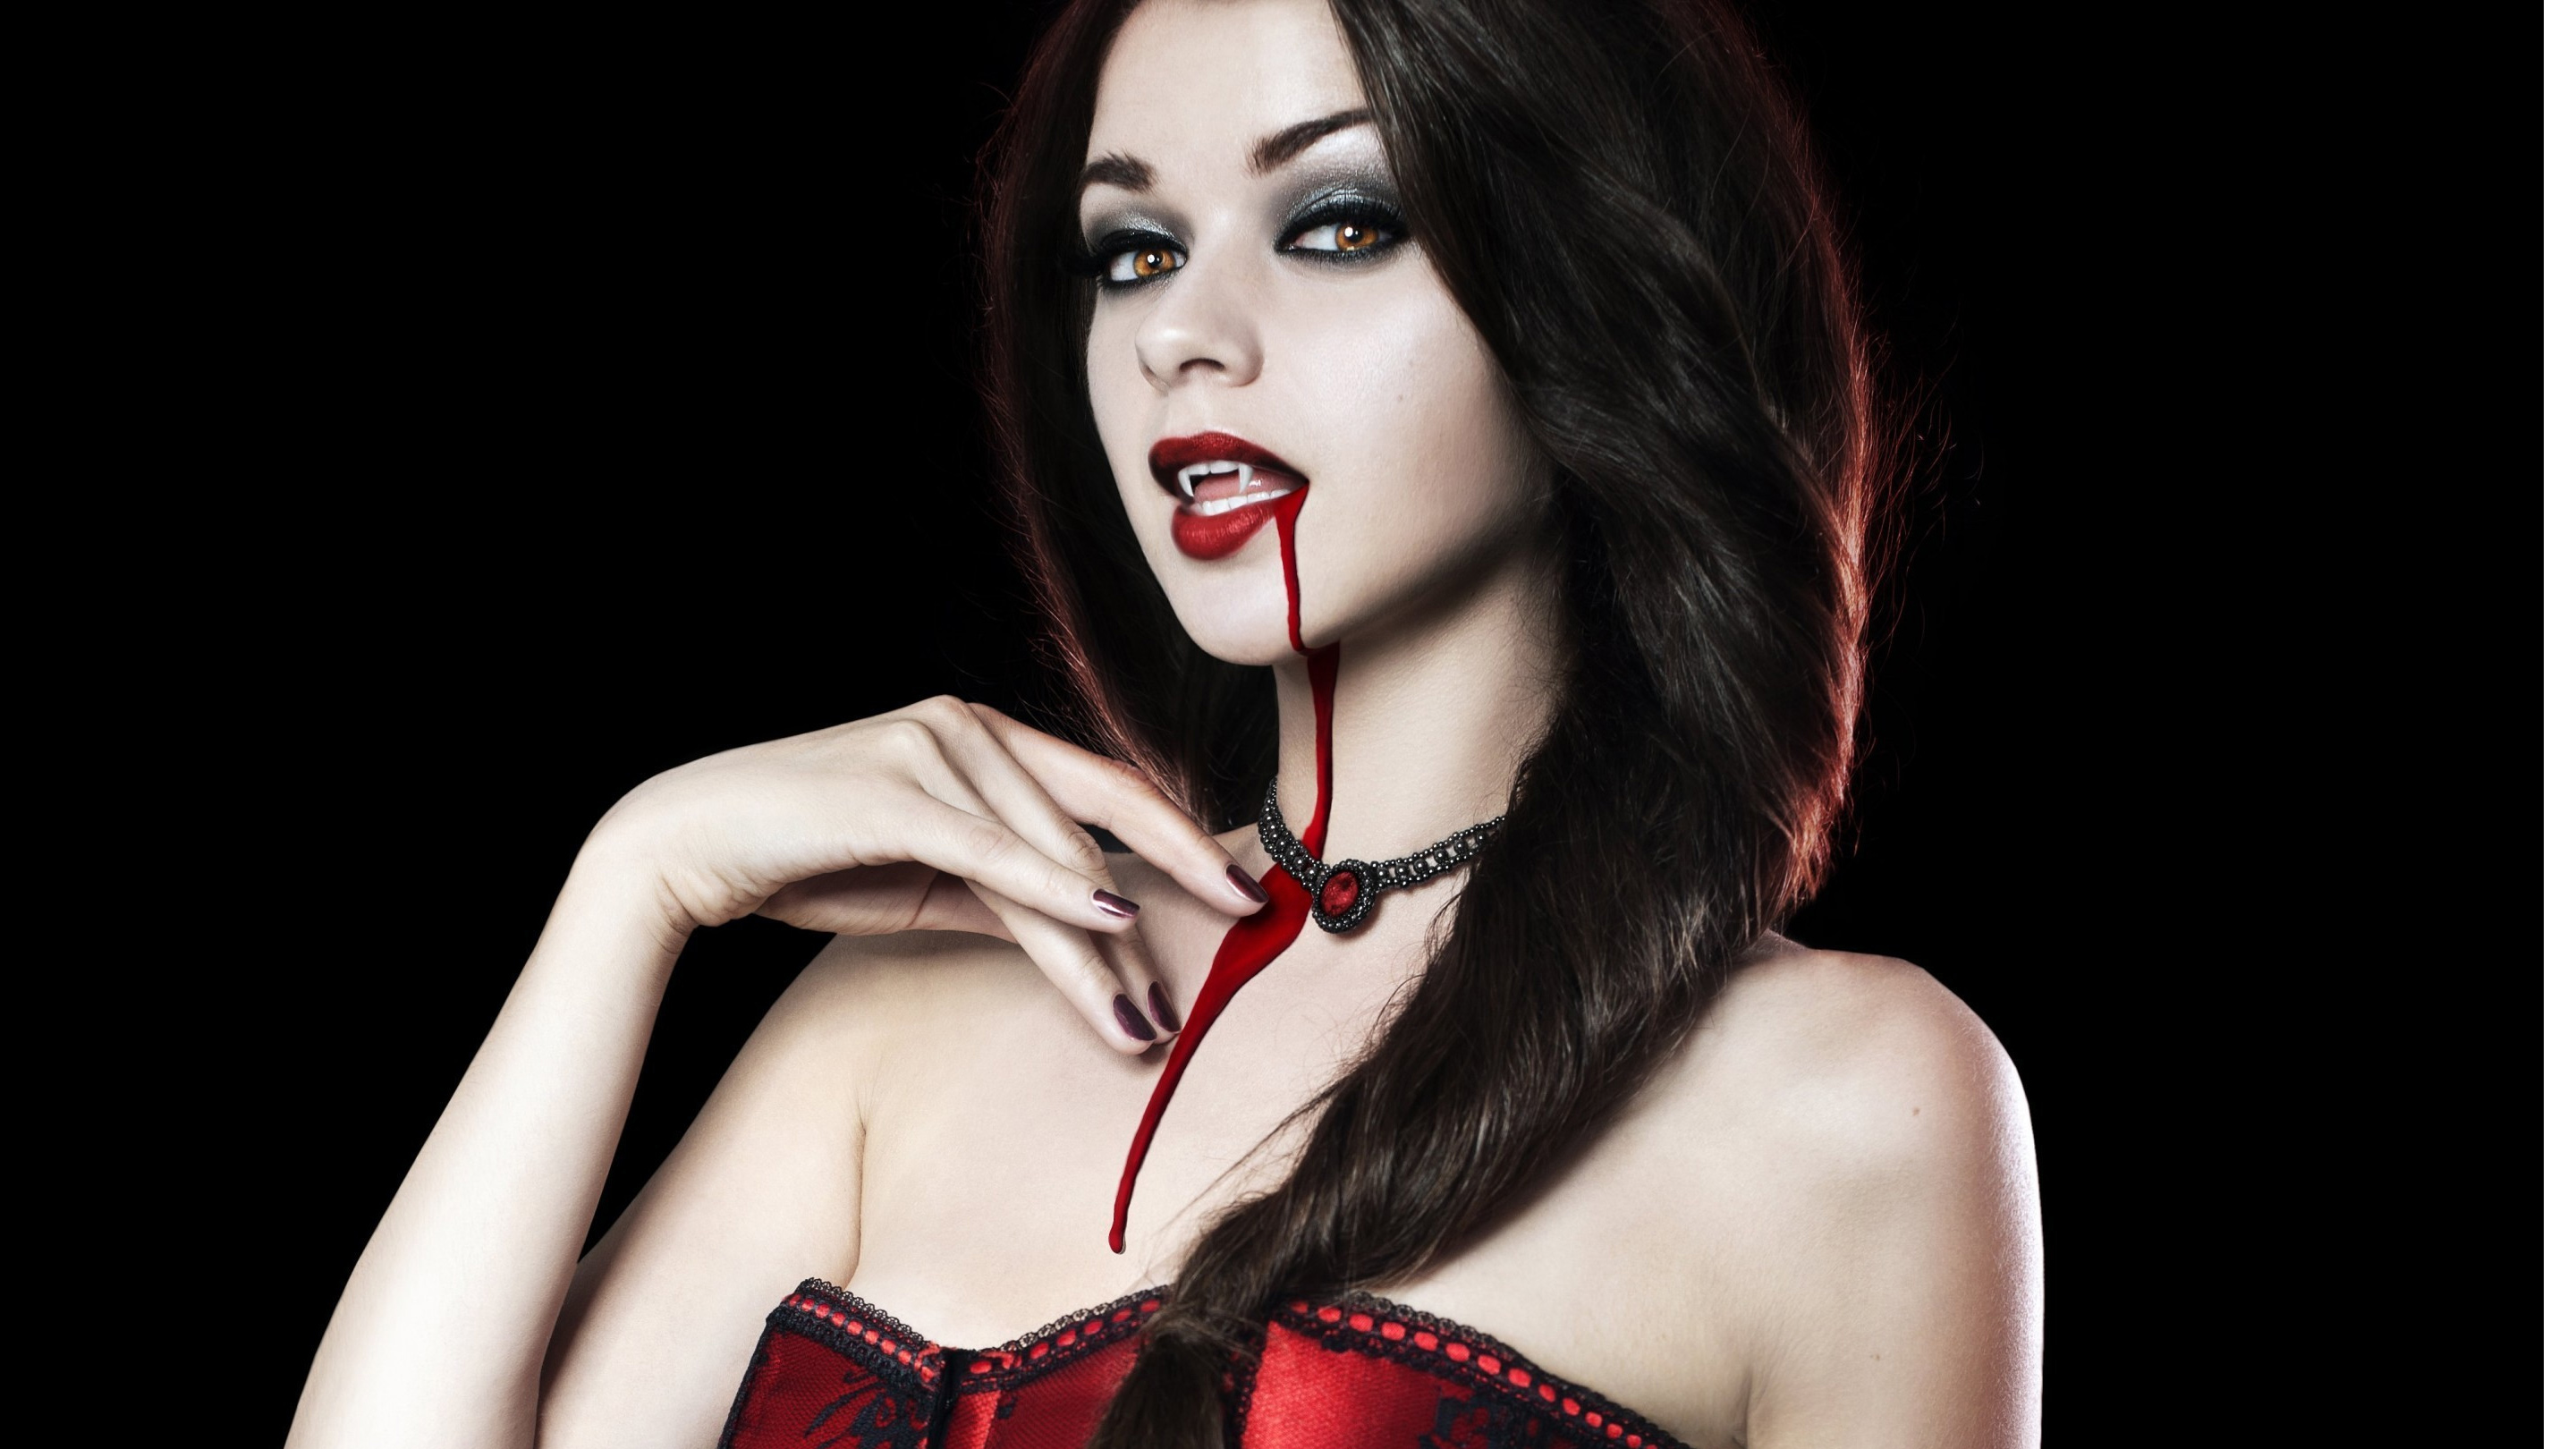 Vampire girl photo